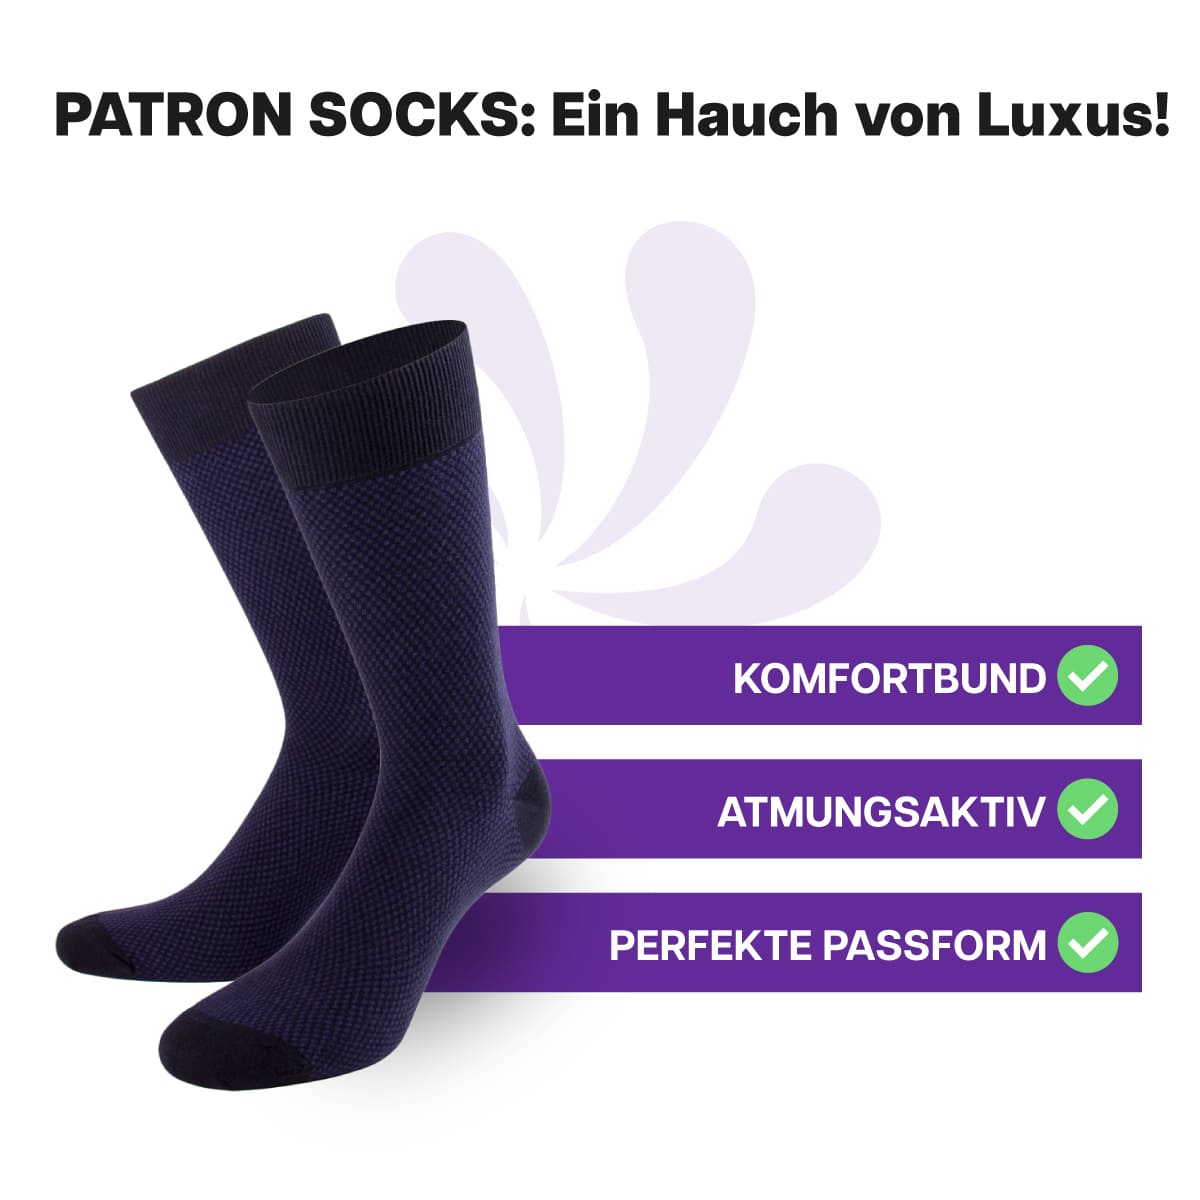 Ausgewählte, schwarz blau farbene Herren Luxus Socken von PATRON SOCKS mit Komfortbund. Sehr gute